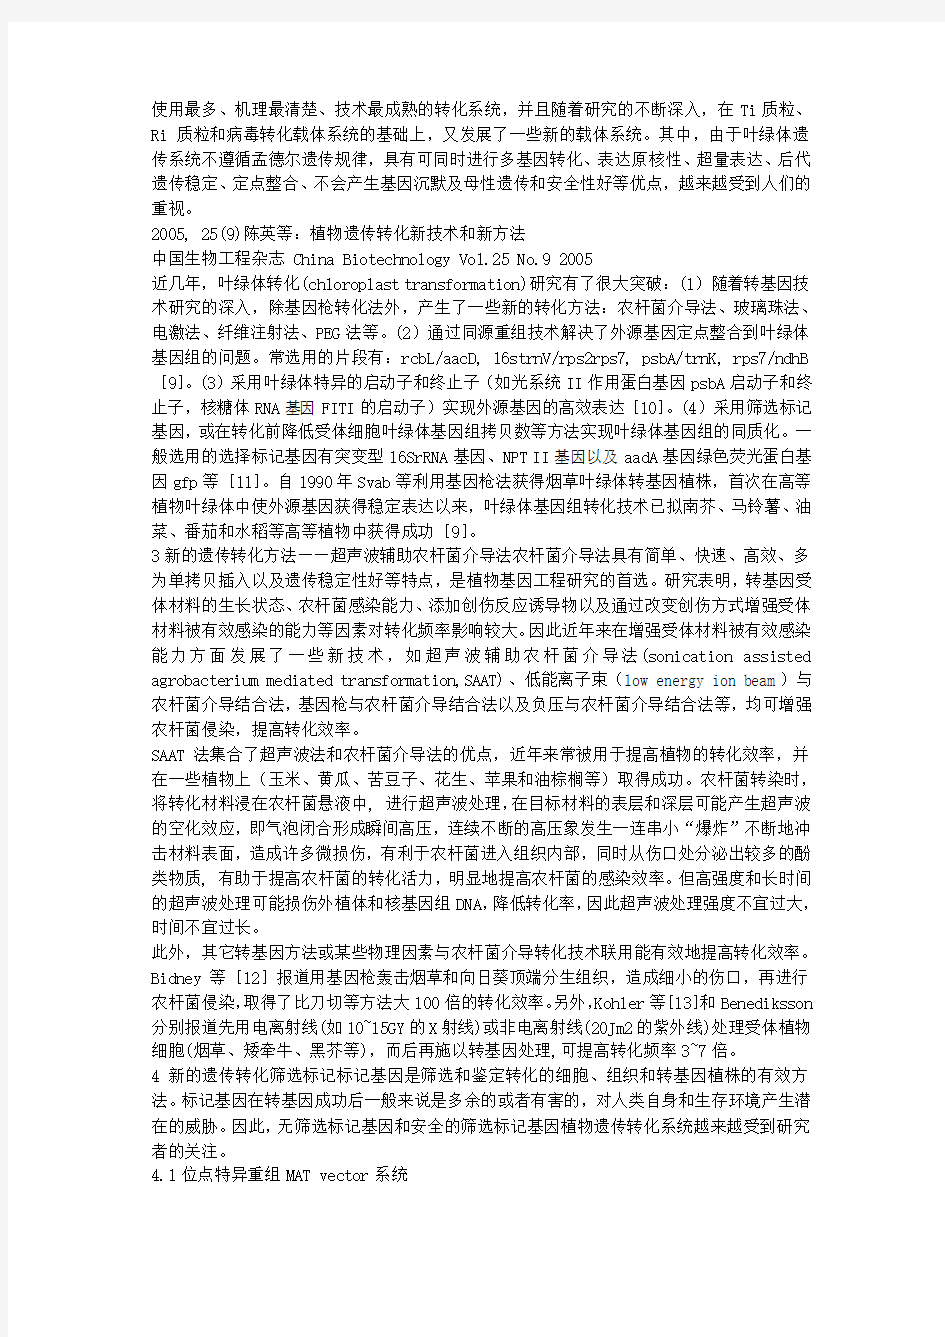 中国生物工程杂志 China Biotechnology Vol25 No9 2005